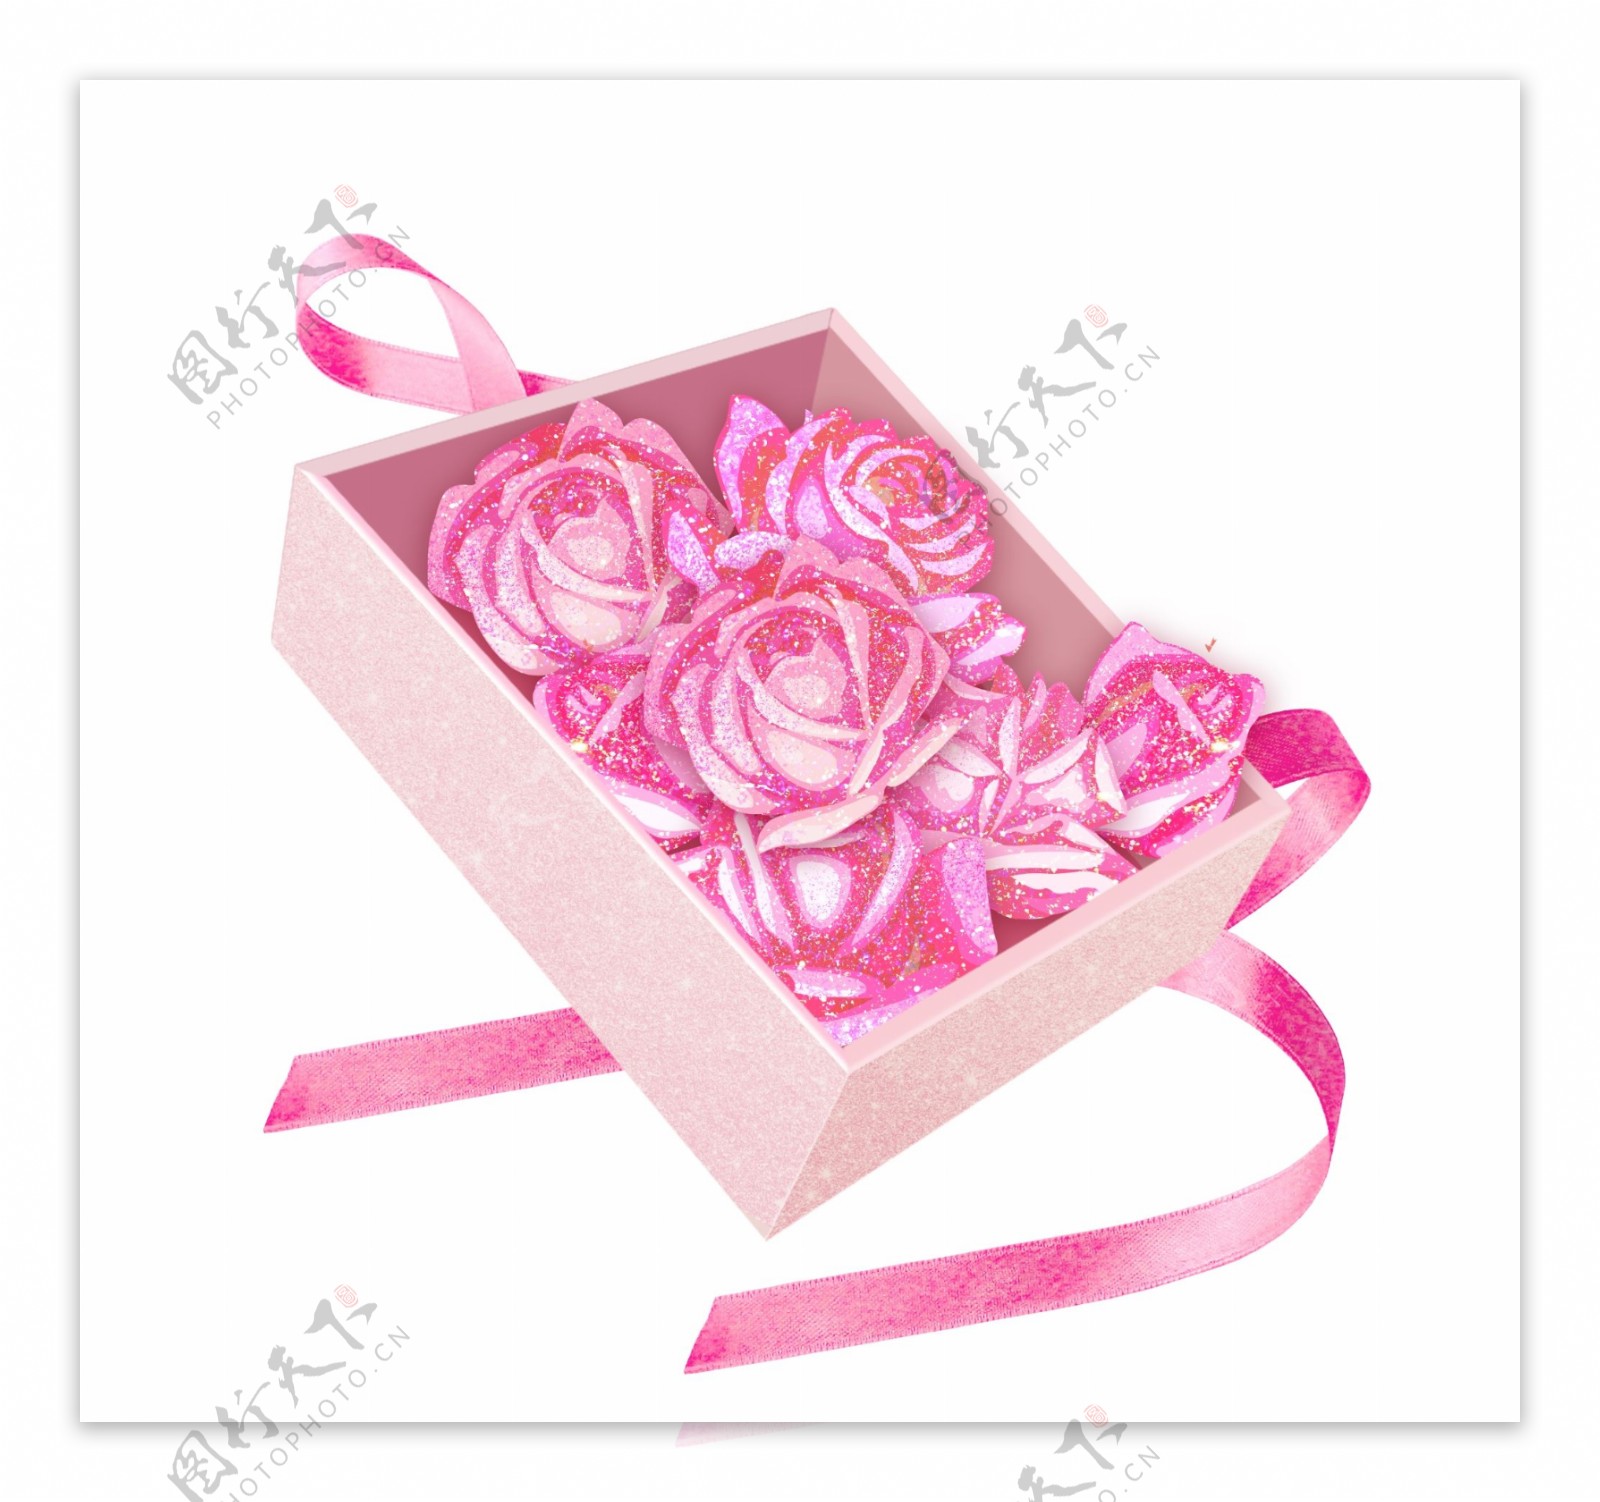 粉色玫瑰花礼品盒素材